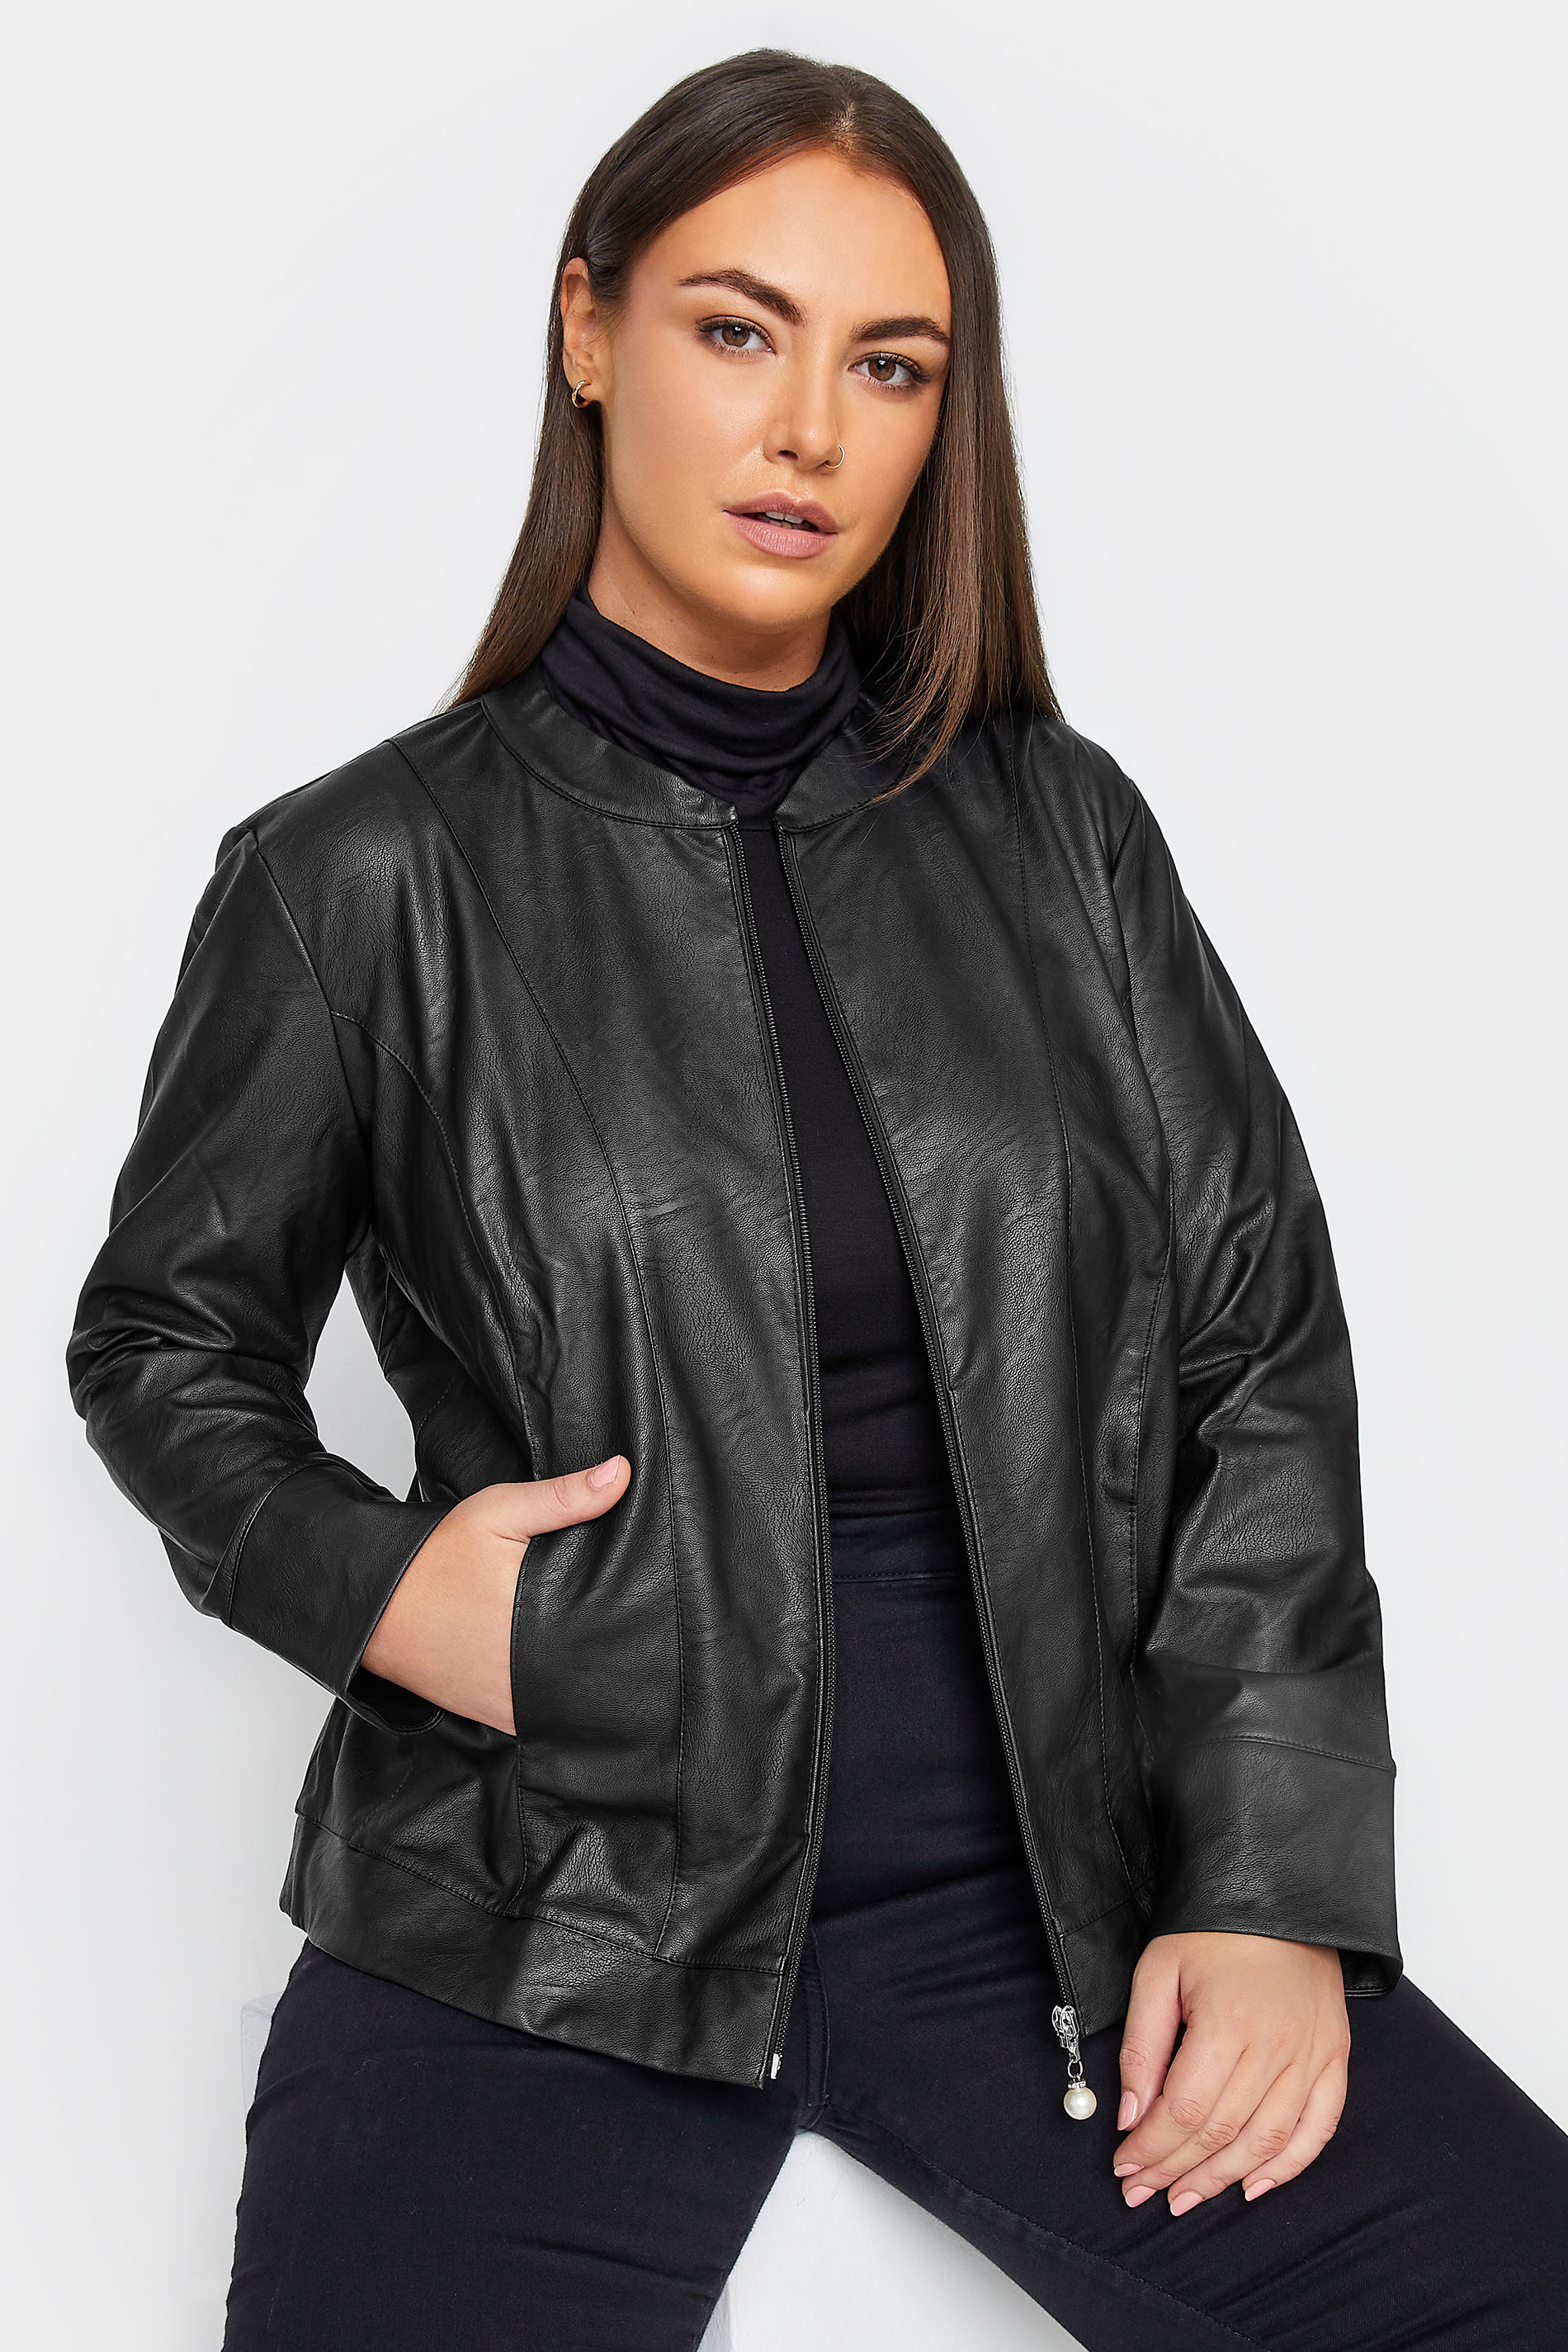 City Chic Black Faux Leather Jacket | Evans 1